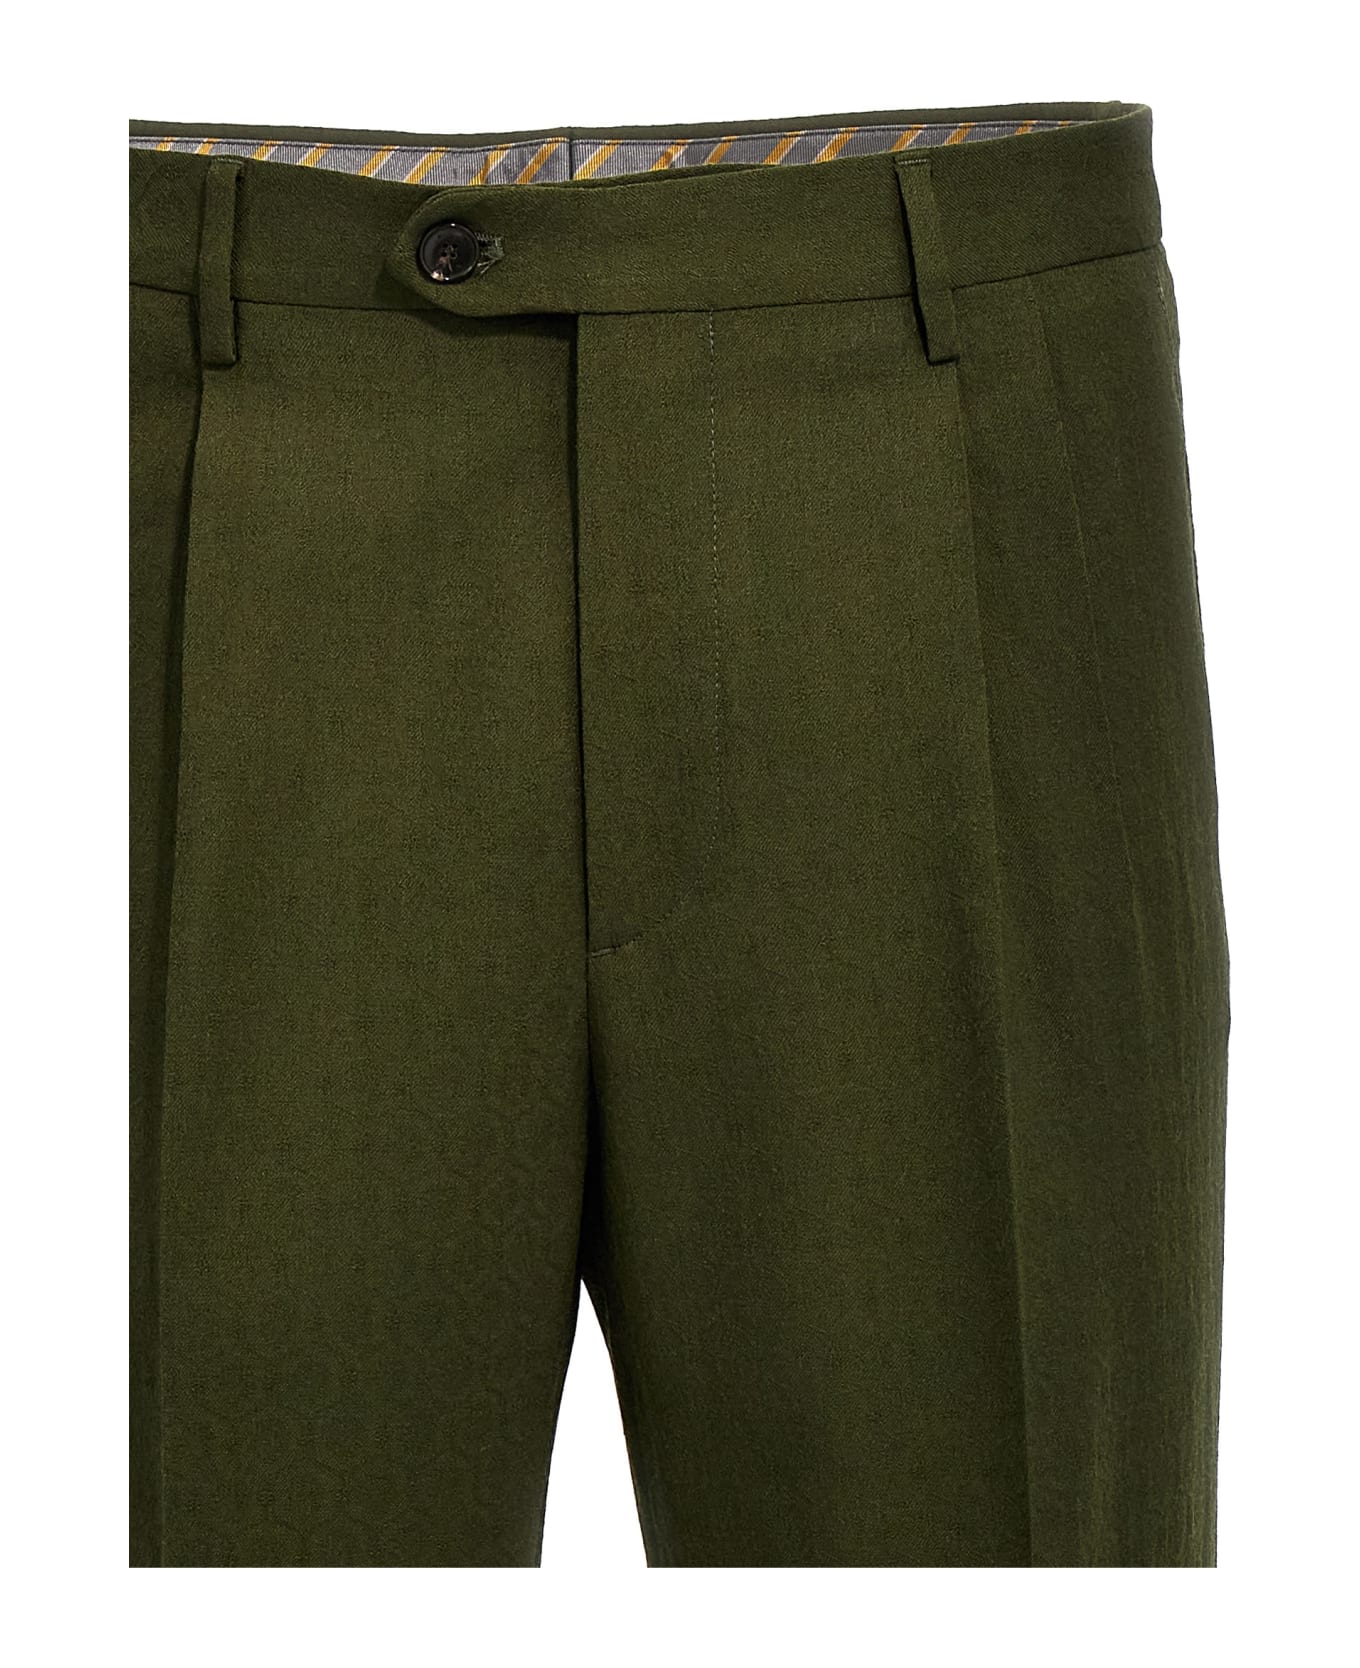 Etro Jacquard Wool Pants - Green